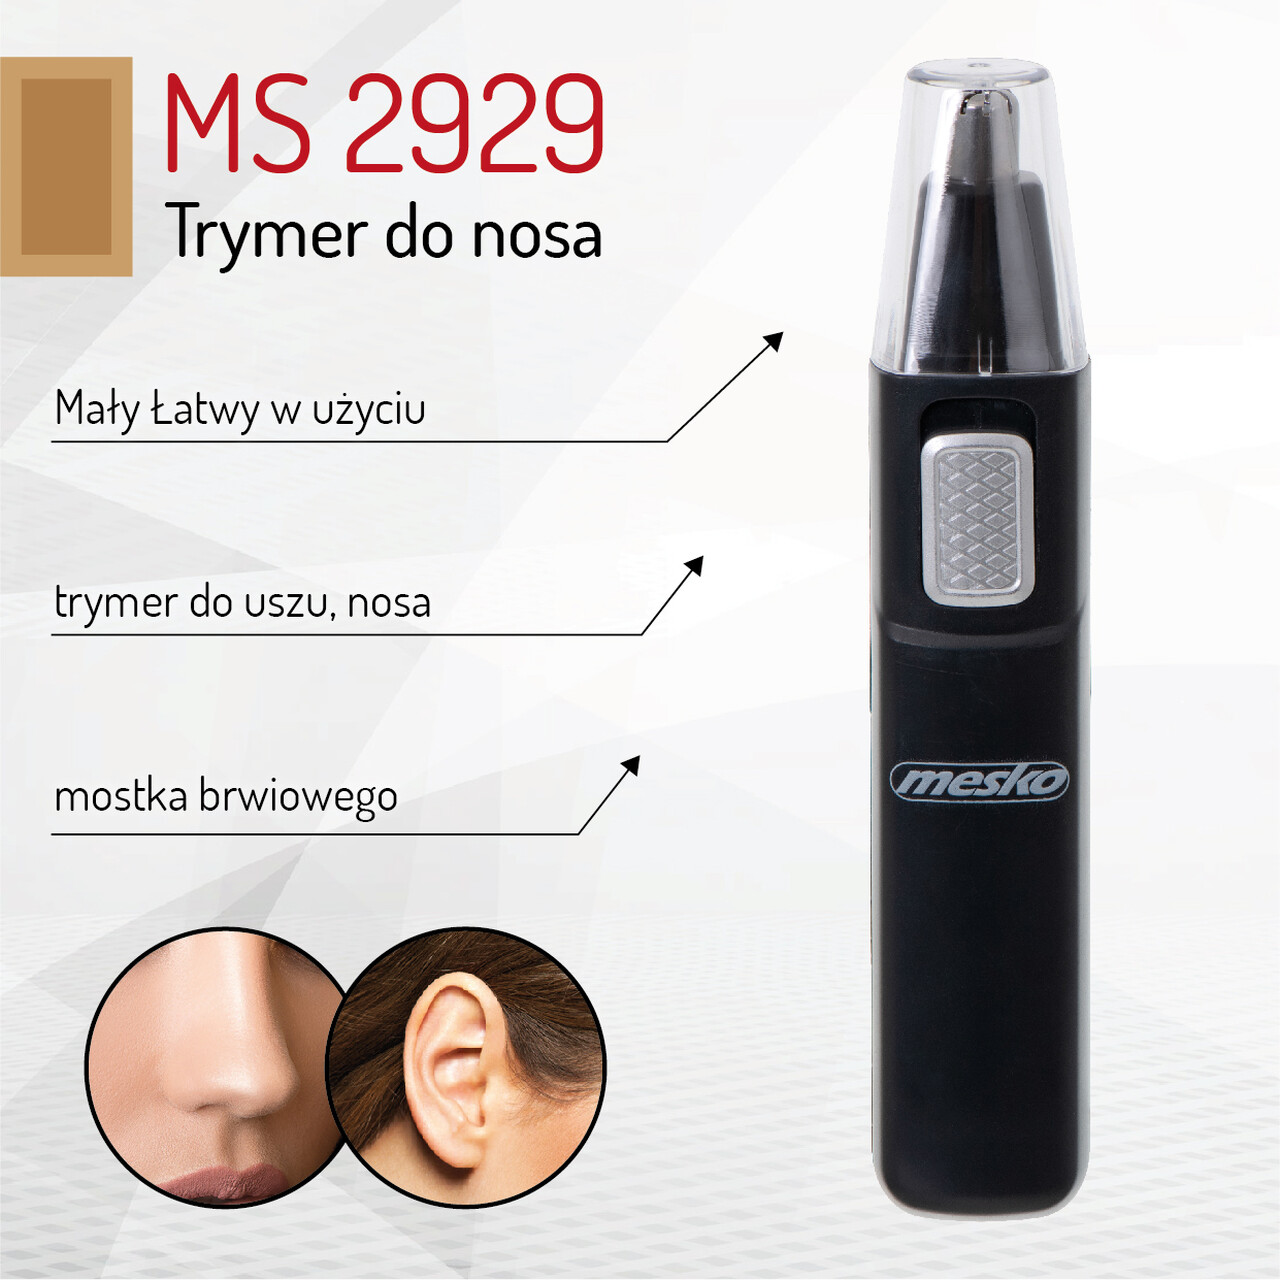 Mesko-MS-2929-Trymer-do-nosa-139251.jpg